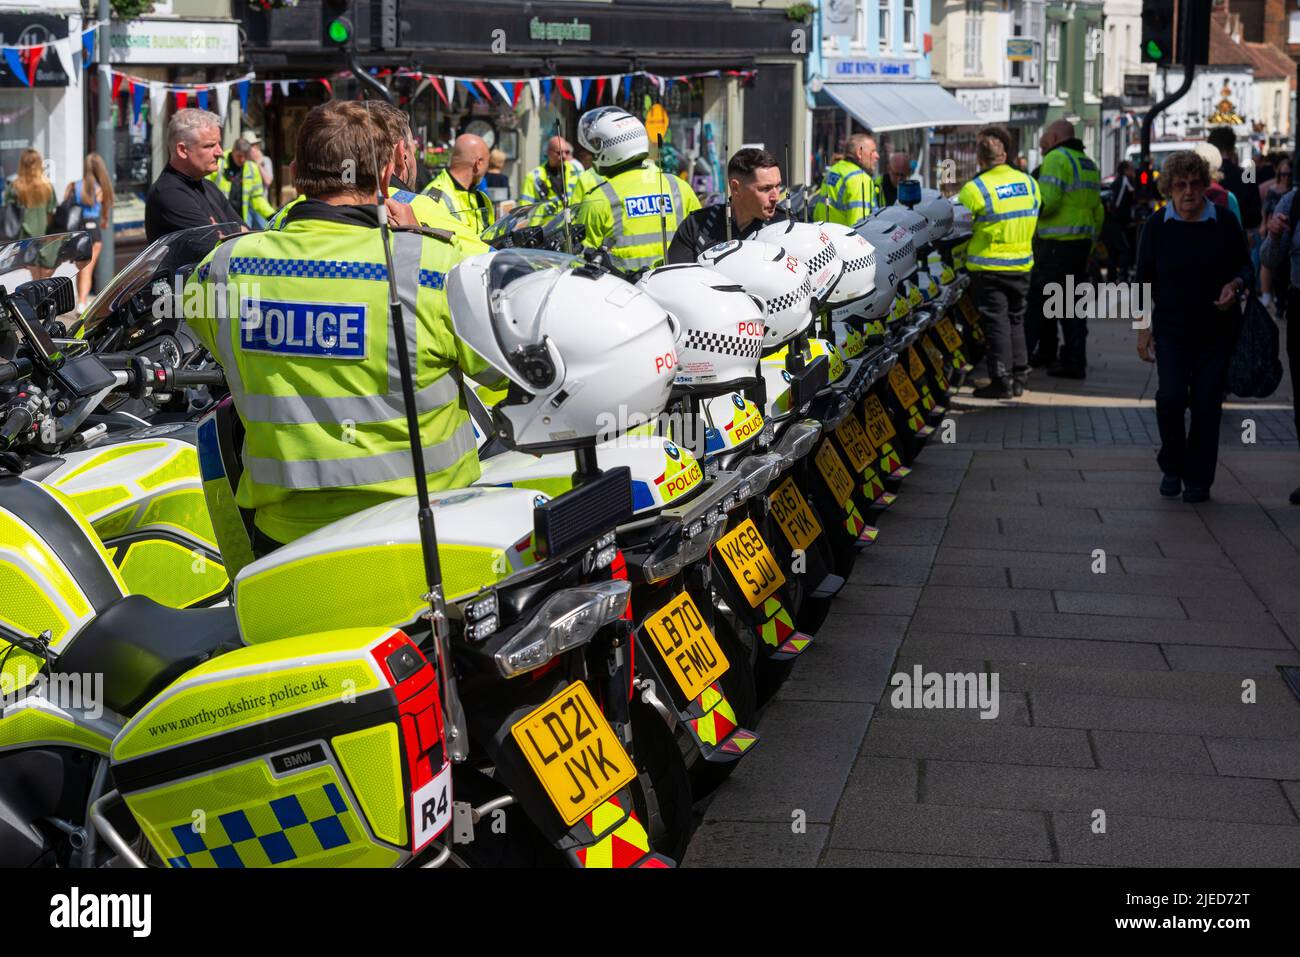 Die Polizei und ihre Motorräder in Maldon, nachdem sie die Straßensperren für die Radrennetappe RideLondon Classique durch Essex in Betrieb genommen hatten. Polizeiarbeit Stockfoto